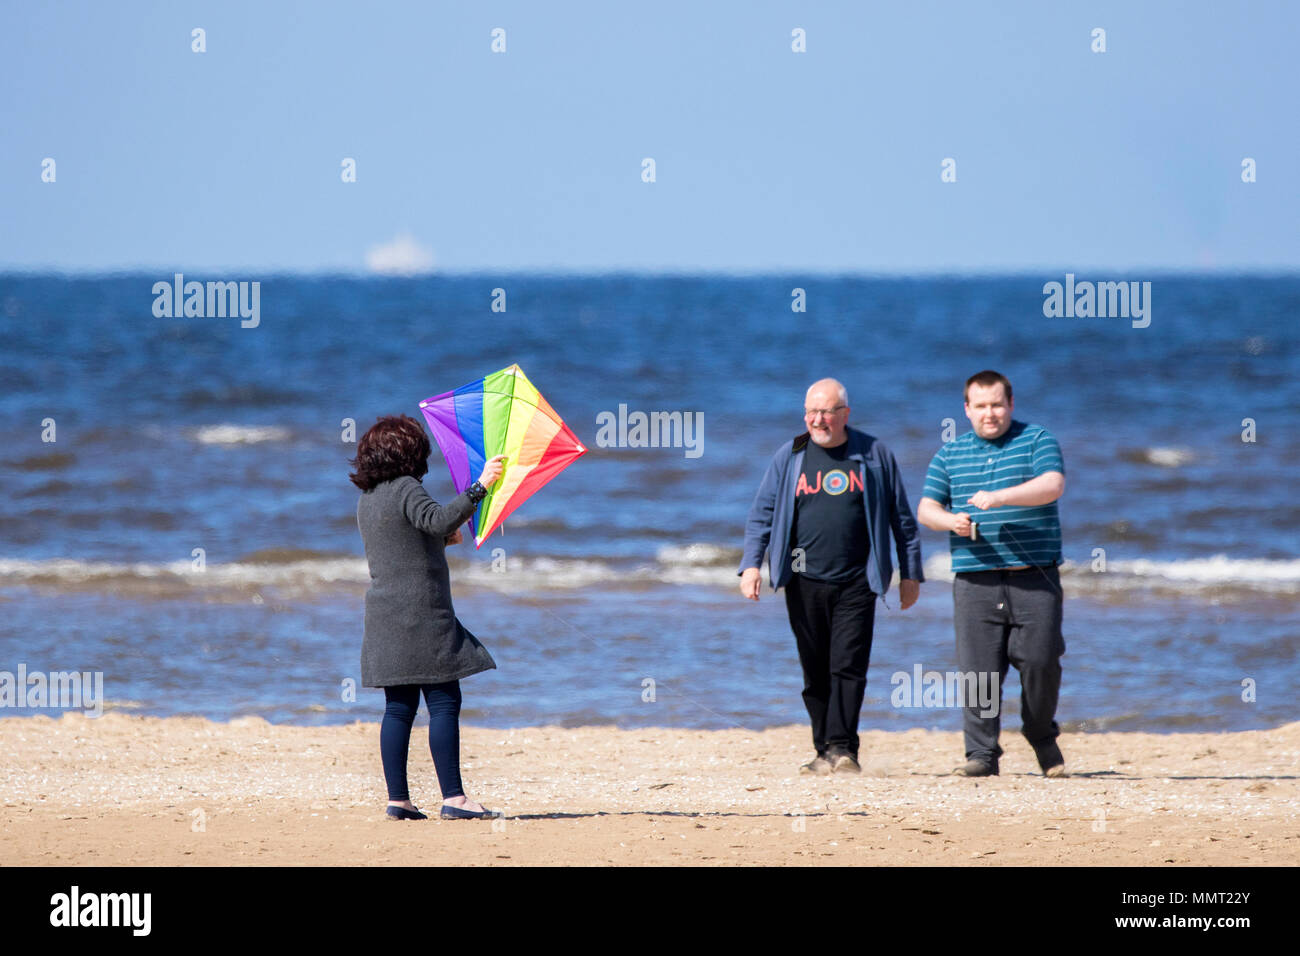 Southport, Merseyside. Le 13 mai 2018. Météo britannique. Une femme s'amuse beaucoup en essayant d'attraper son cerf-volant sur le sable doré de la plage de Southport Merseyside. Credit : Cernan Elias/Alamy Live News Banque D'Images